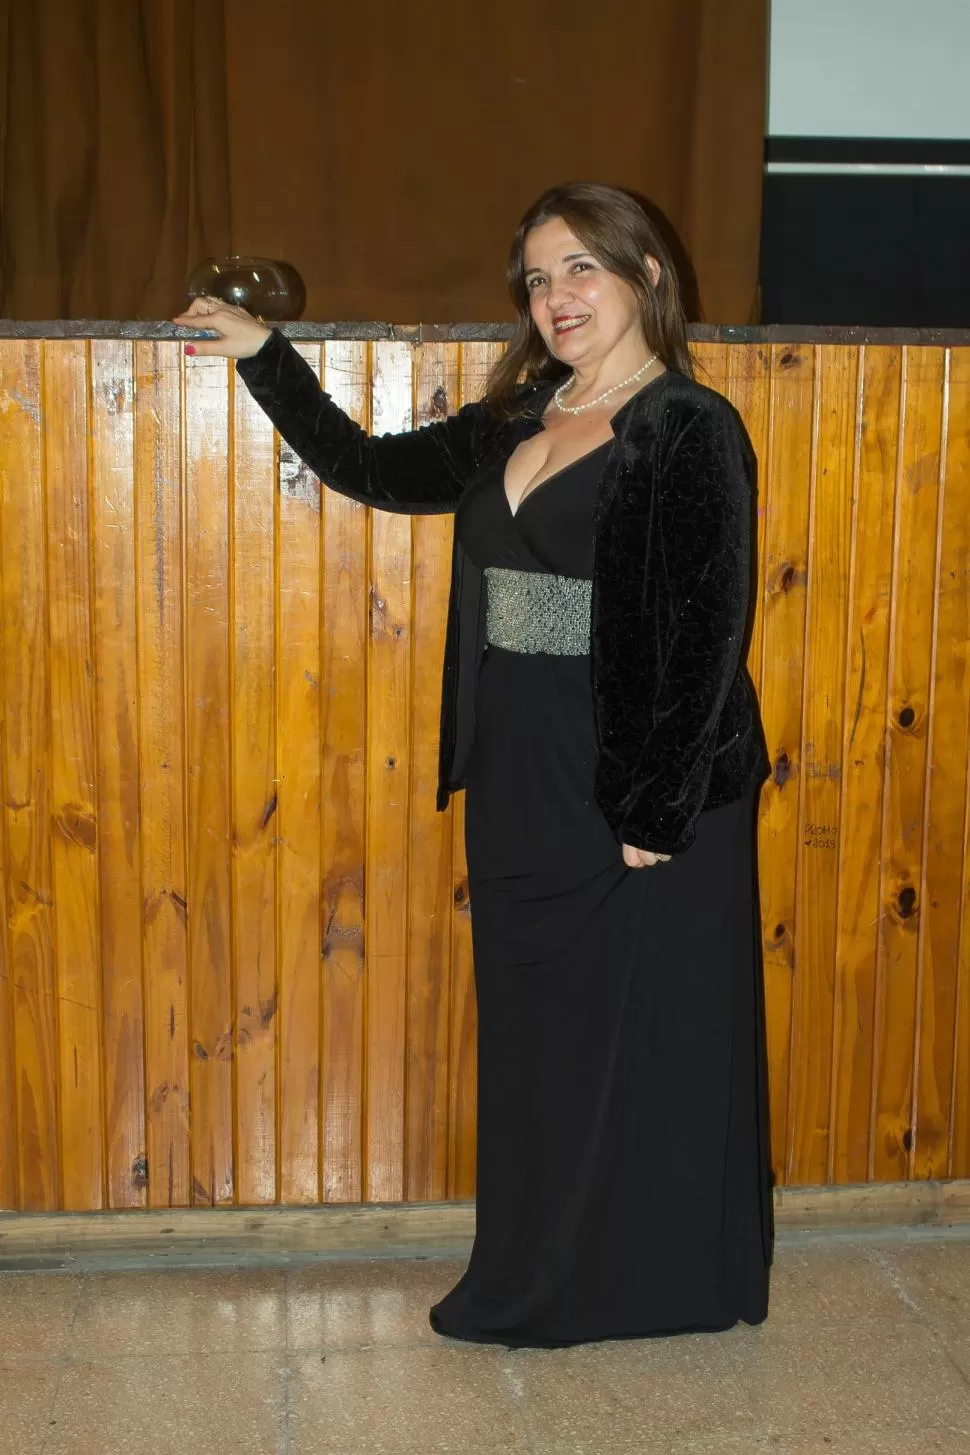 DIRECTORA Y CANTANTE. María Silvia Soria conduce Suite Ópera Tucumán. suite opera tucumán